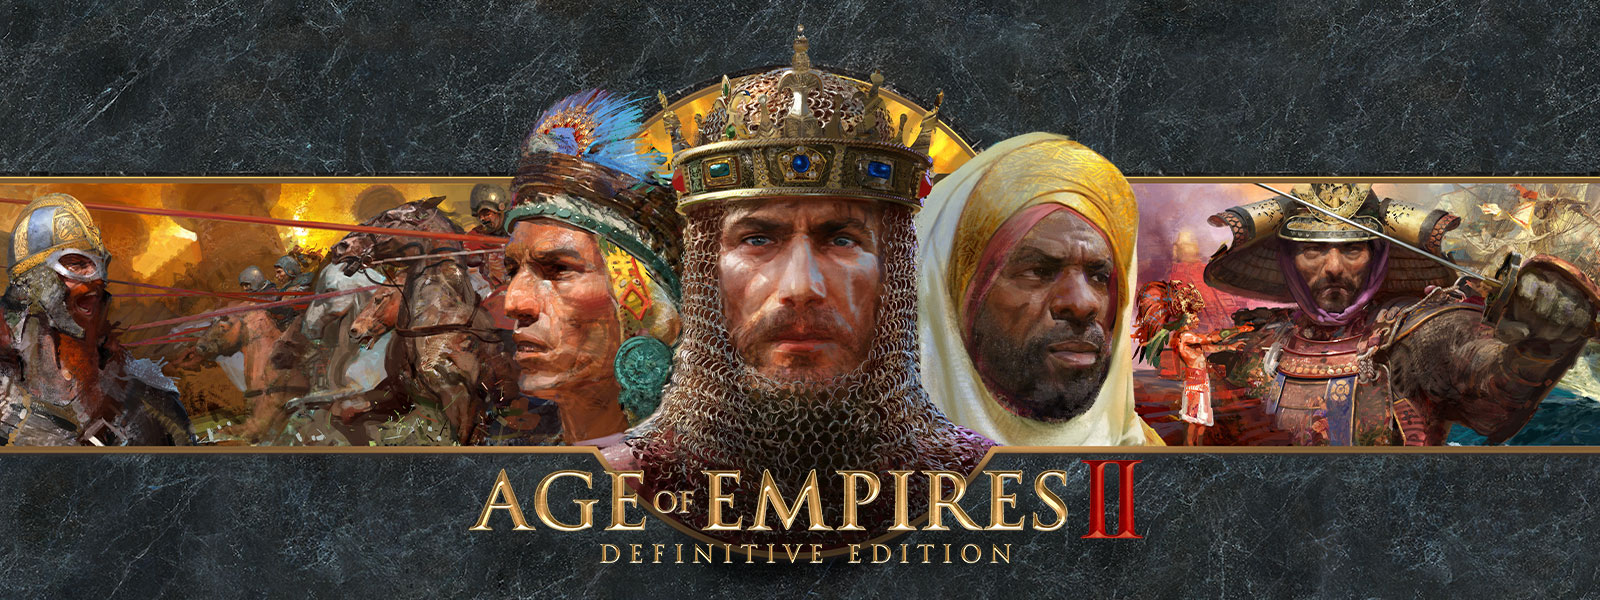 戦争の指導者とその軍隊をフィーチャーした灰色のスレートの背景に Age of Empires II: Definitive Edition ロゴ